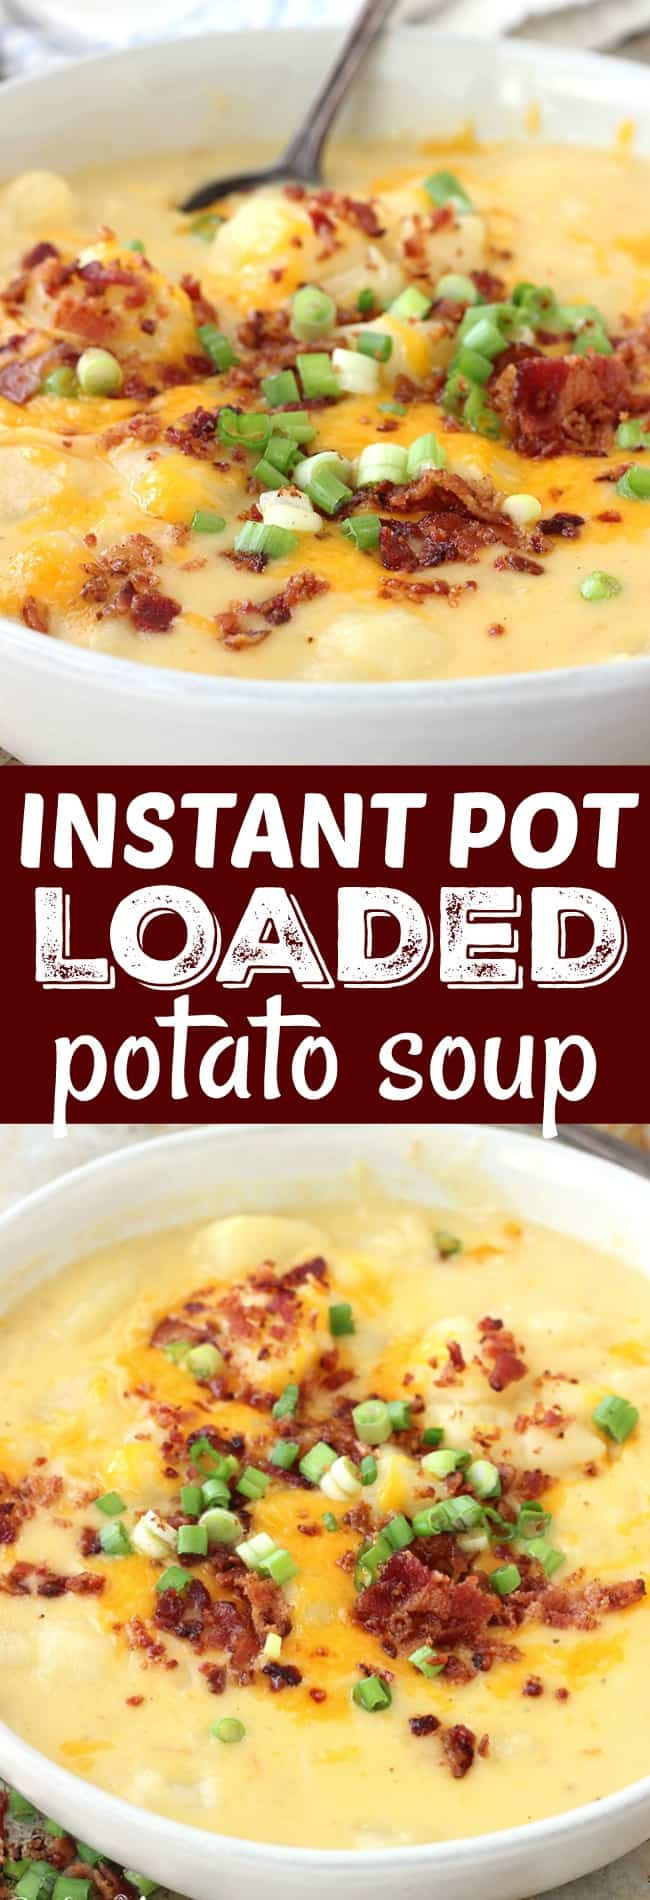 Potato Soup In Instant Pot
 Instant Pot Loaded Potato Soup Belle of the Kitchen